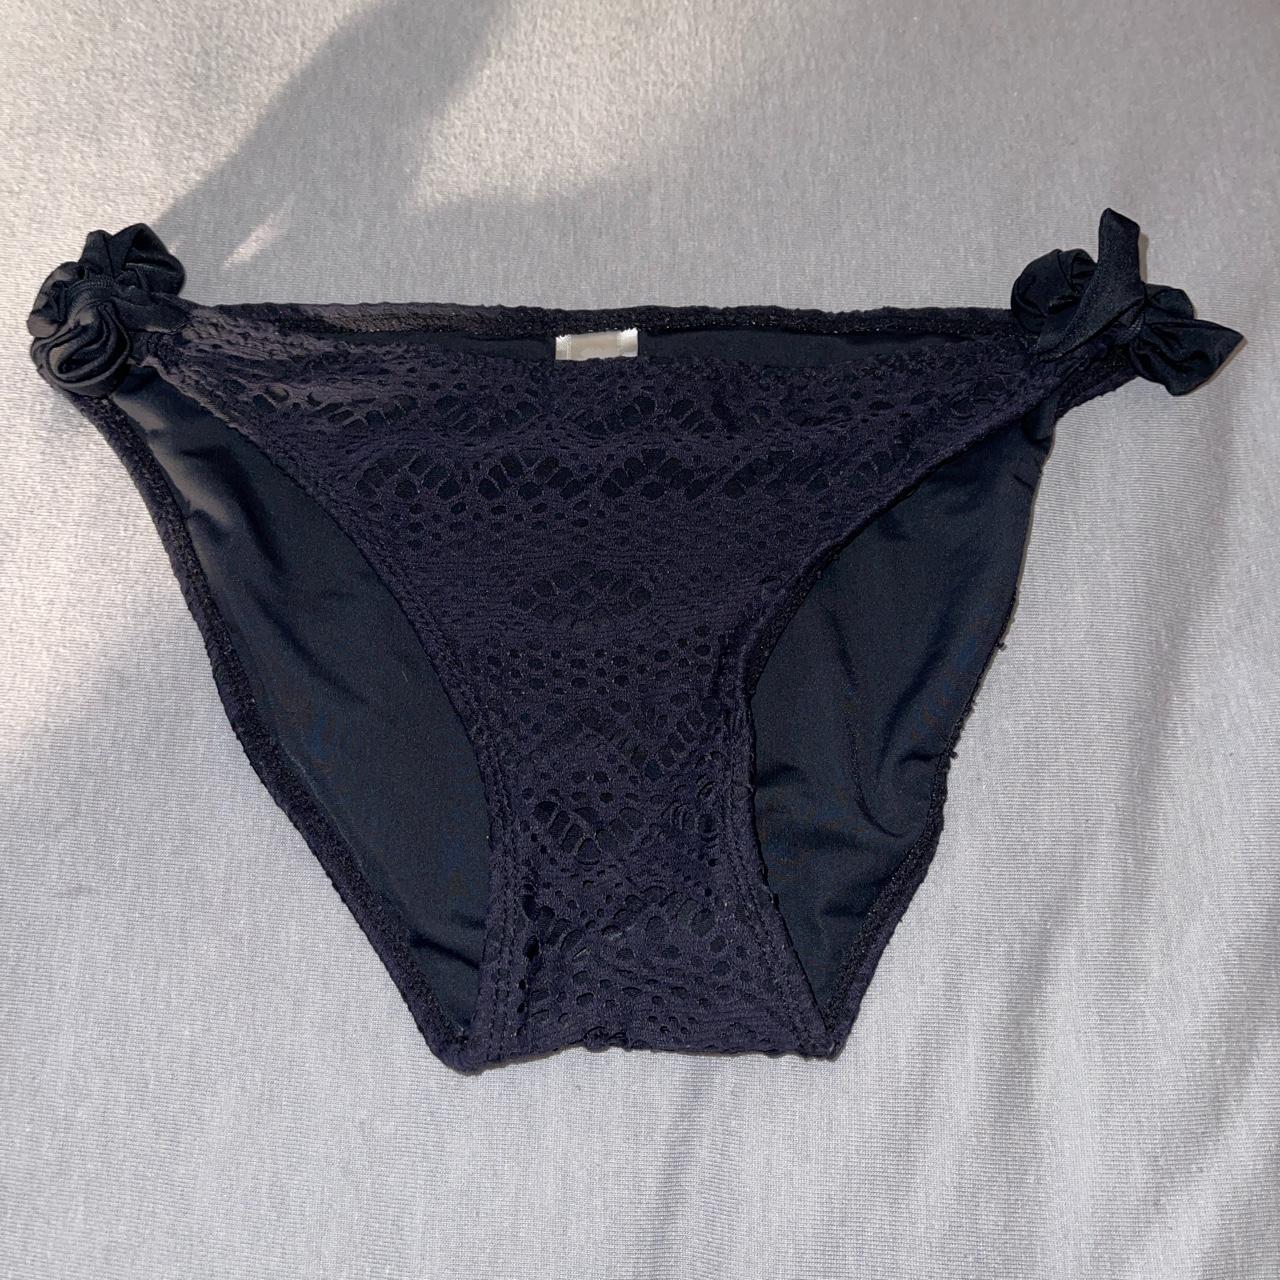 Product Image 1 - hula honey bathing suit bottoms

✦